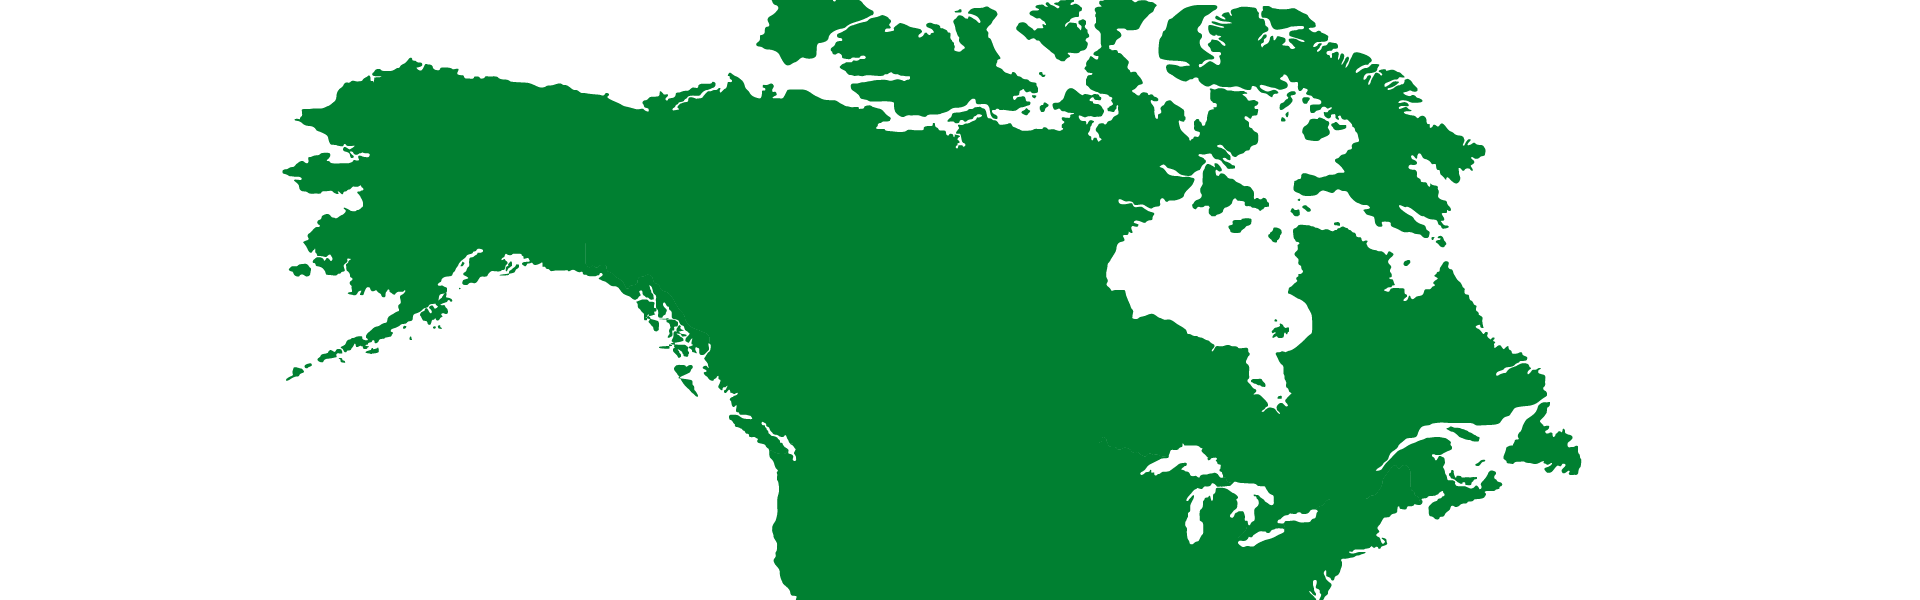 North America (USA & Canada)